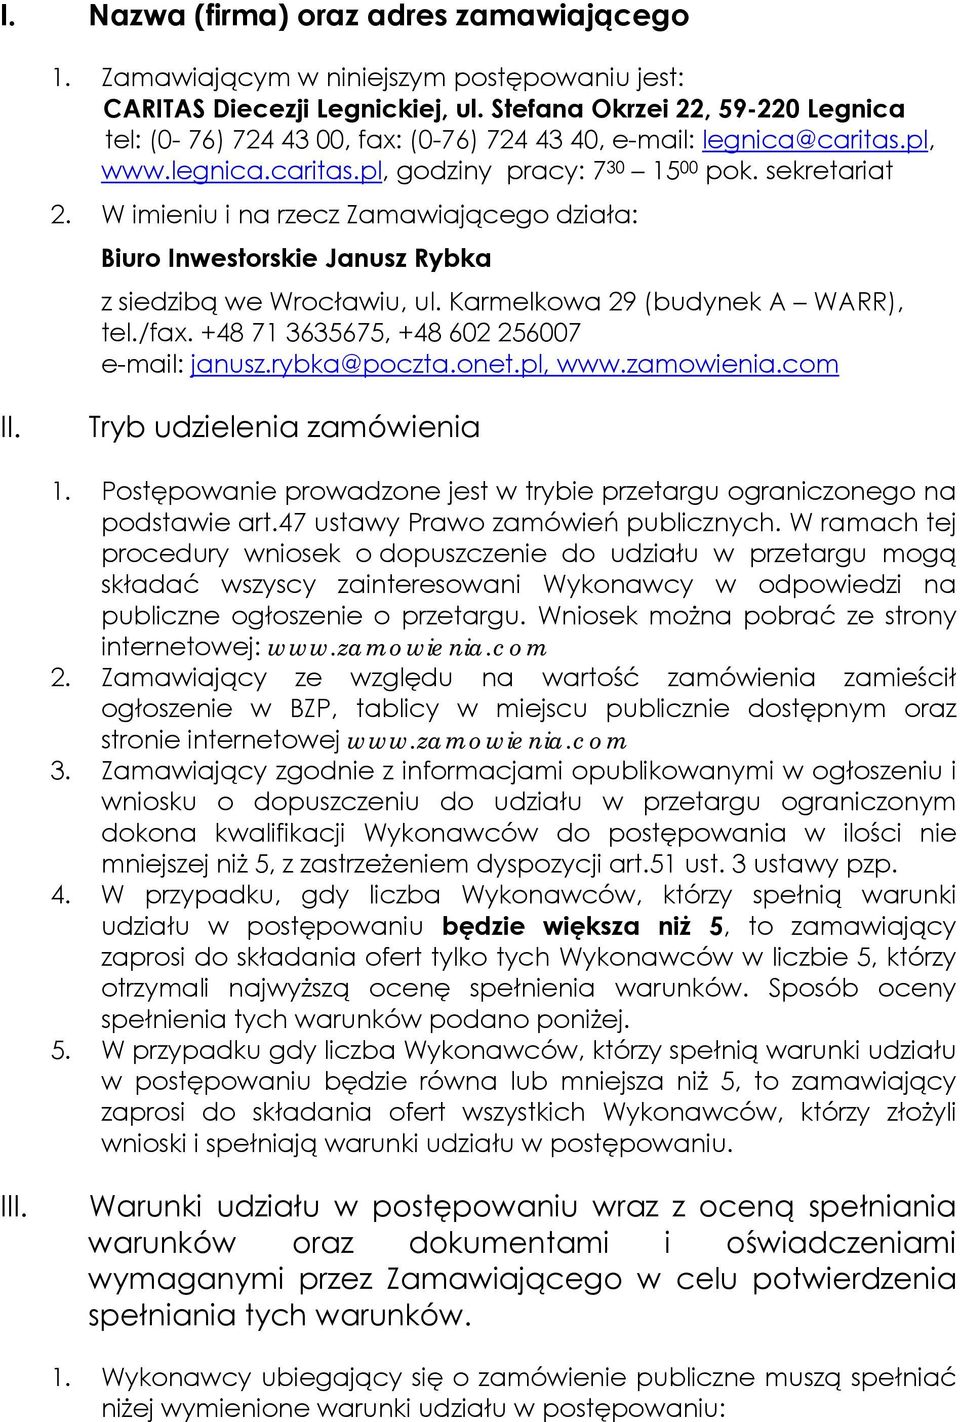 W imieniu i na rzecz Zamawiającego działa: Biuro Inwestorskie Janusz Rybka z siedzibą we Wrocławiu, ul. Karmelkowa 29 (budynek A WARR), tel./fax. +48 71 3635675, +48 602 256007 e-mail: janusz.